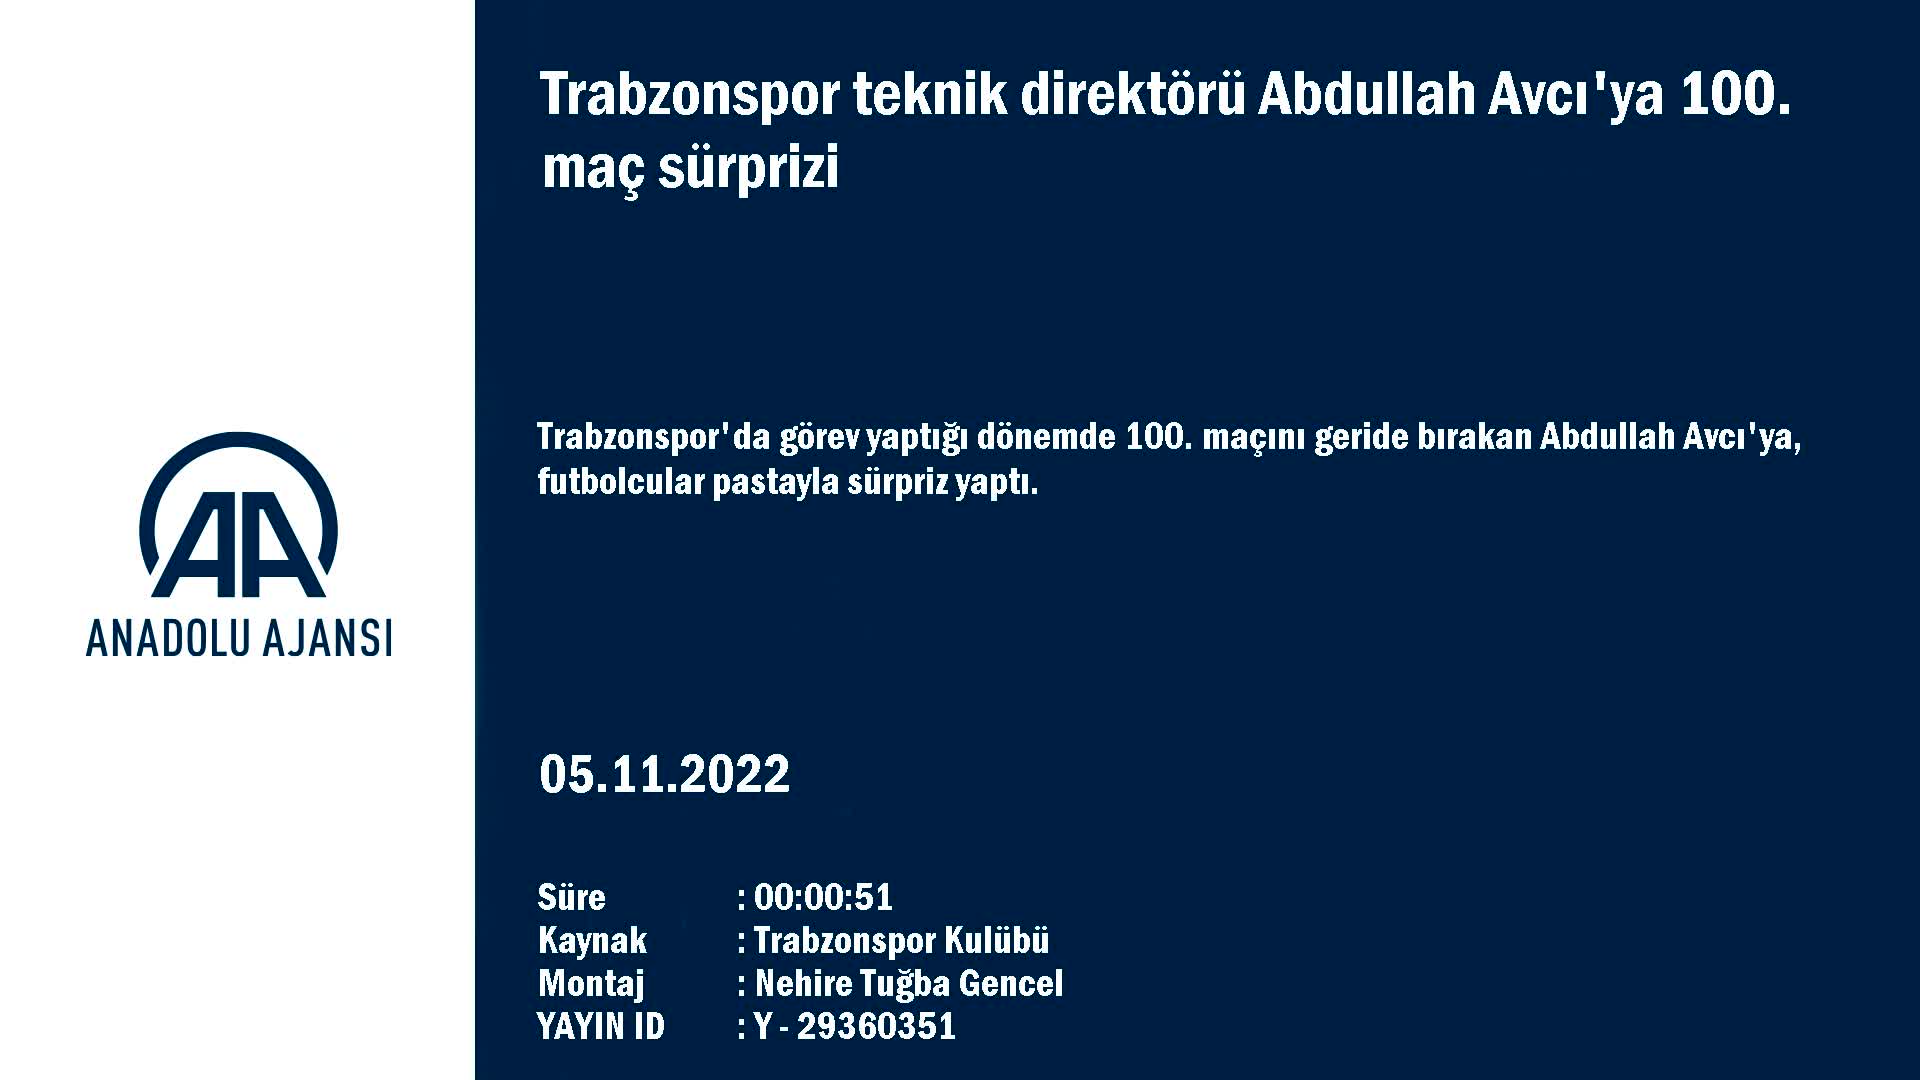 Trabzonspor teknik direktörü Abdullah Avcı’ya 100. maç sürprizi